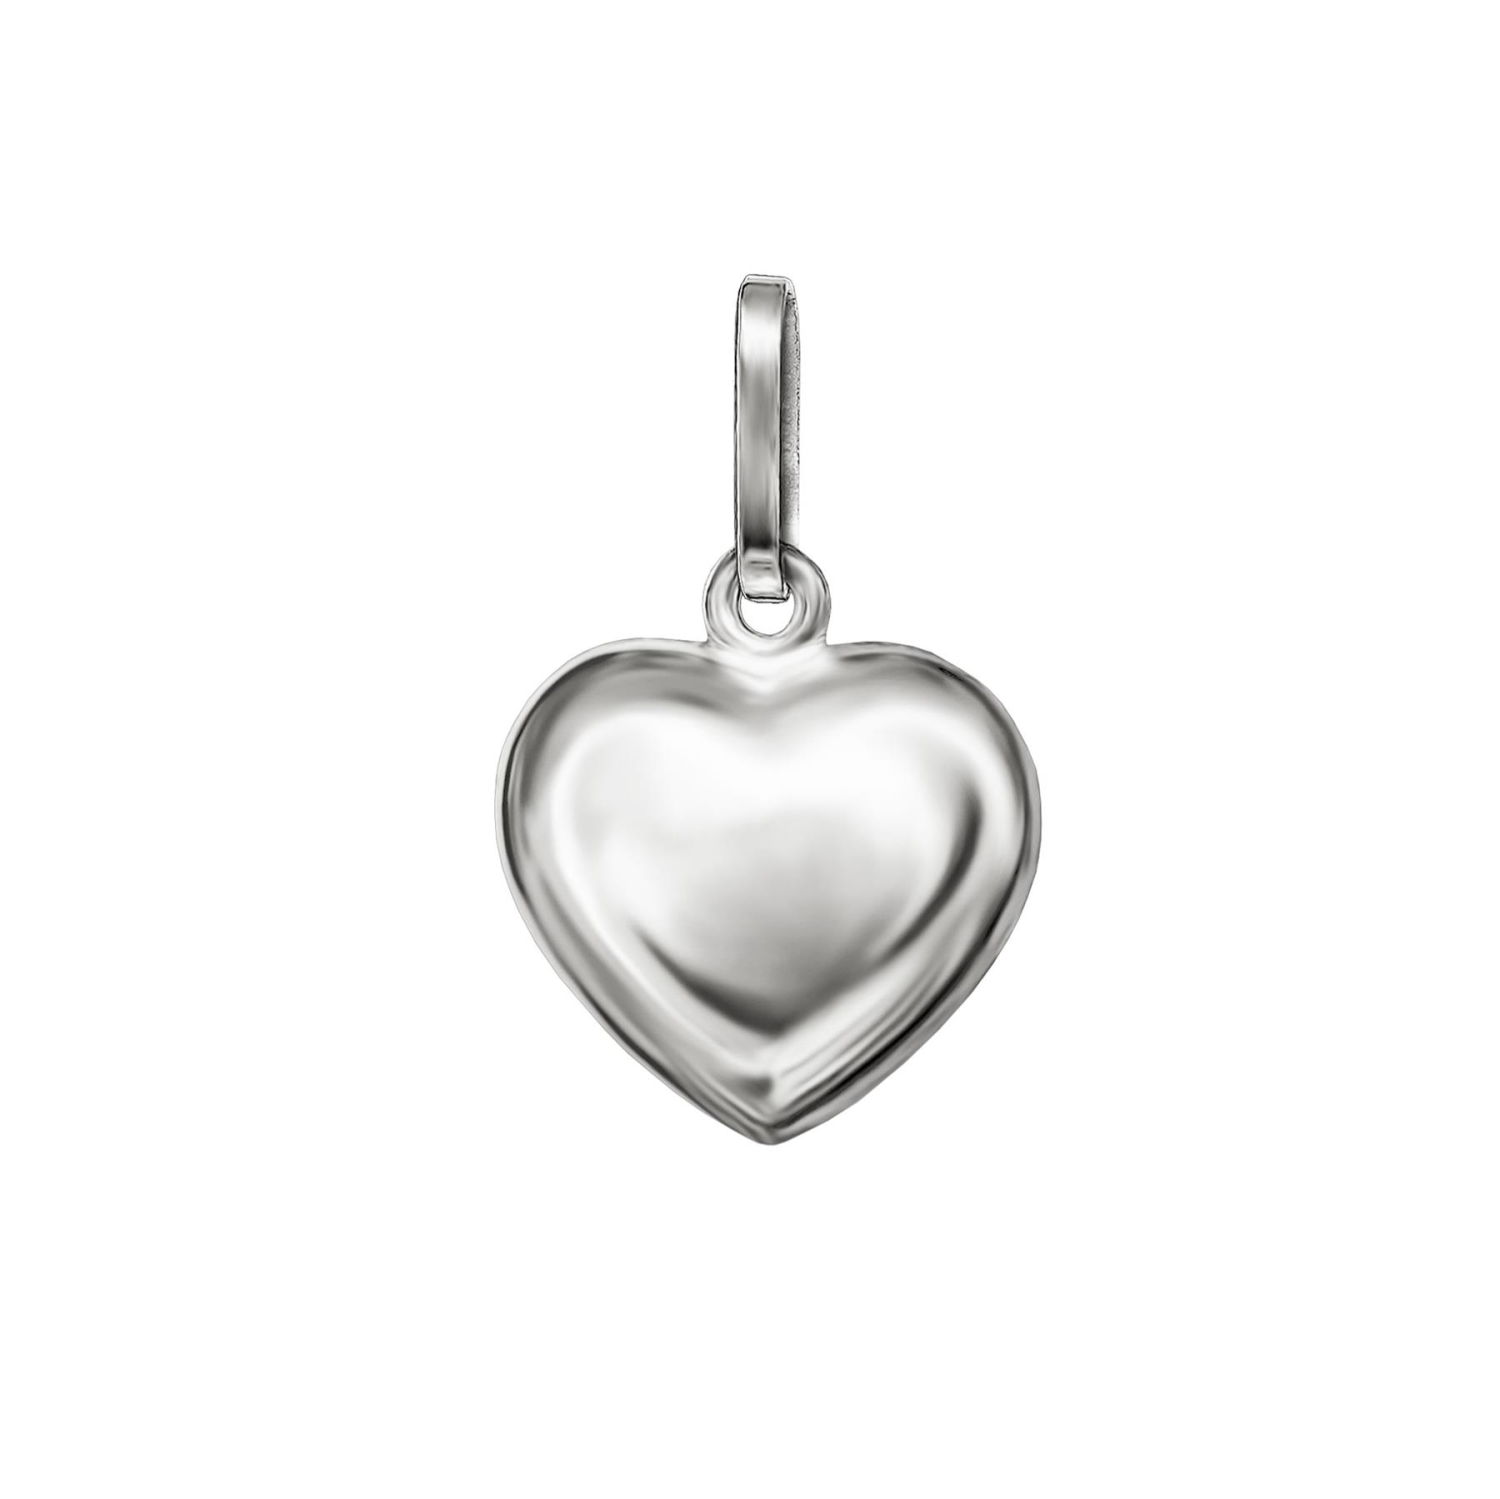 Silberner Anhänger Herz 8 mm schlicht beidseitig leicht plastisch hochglänzend poliert STERLING SILBER 925